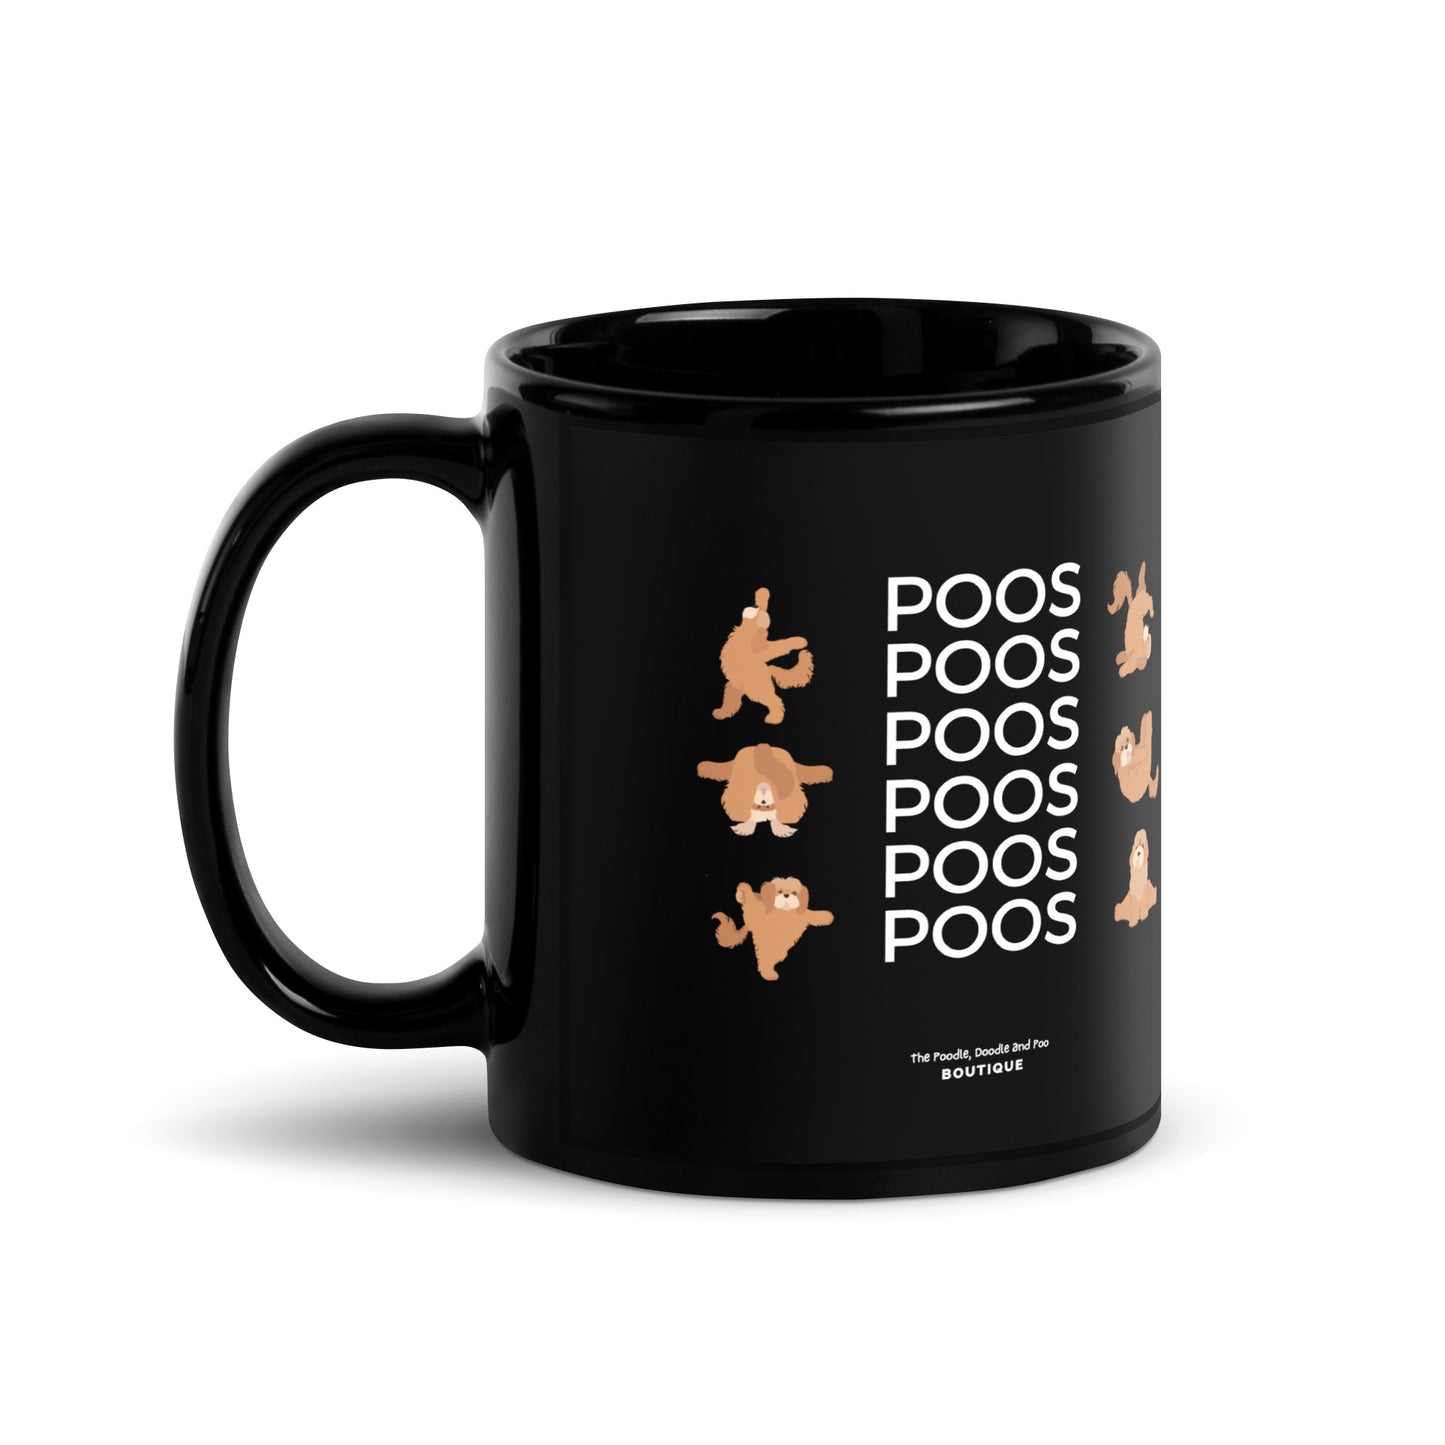 "Poos, Poos, Poos" Black Glossy Mug